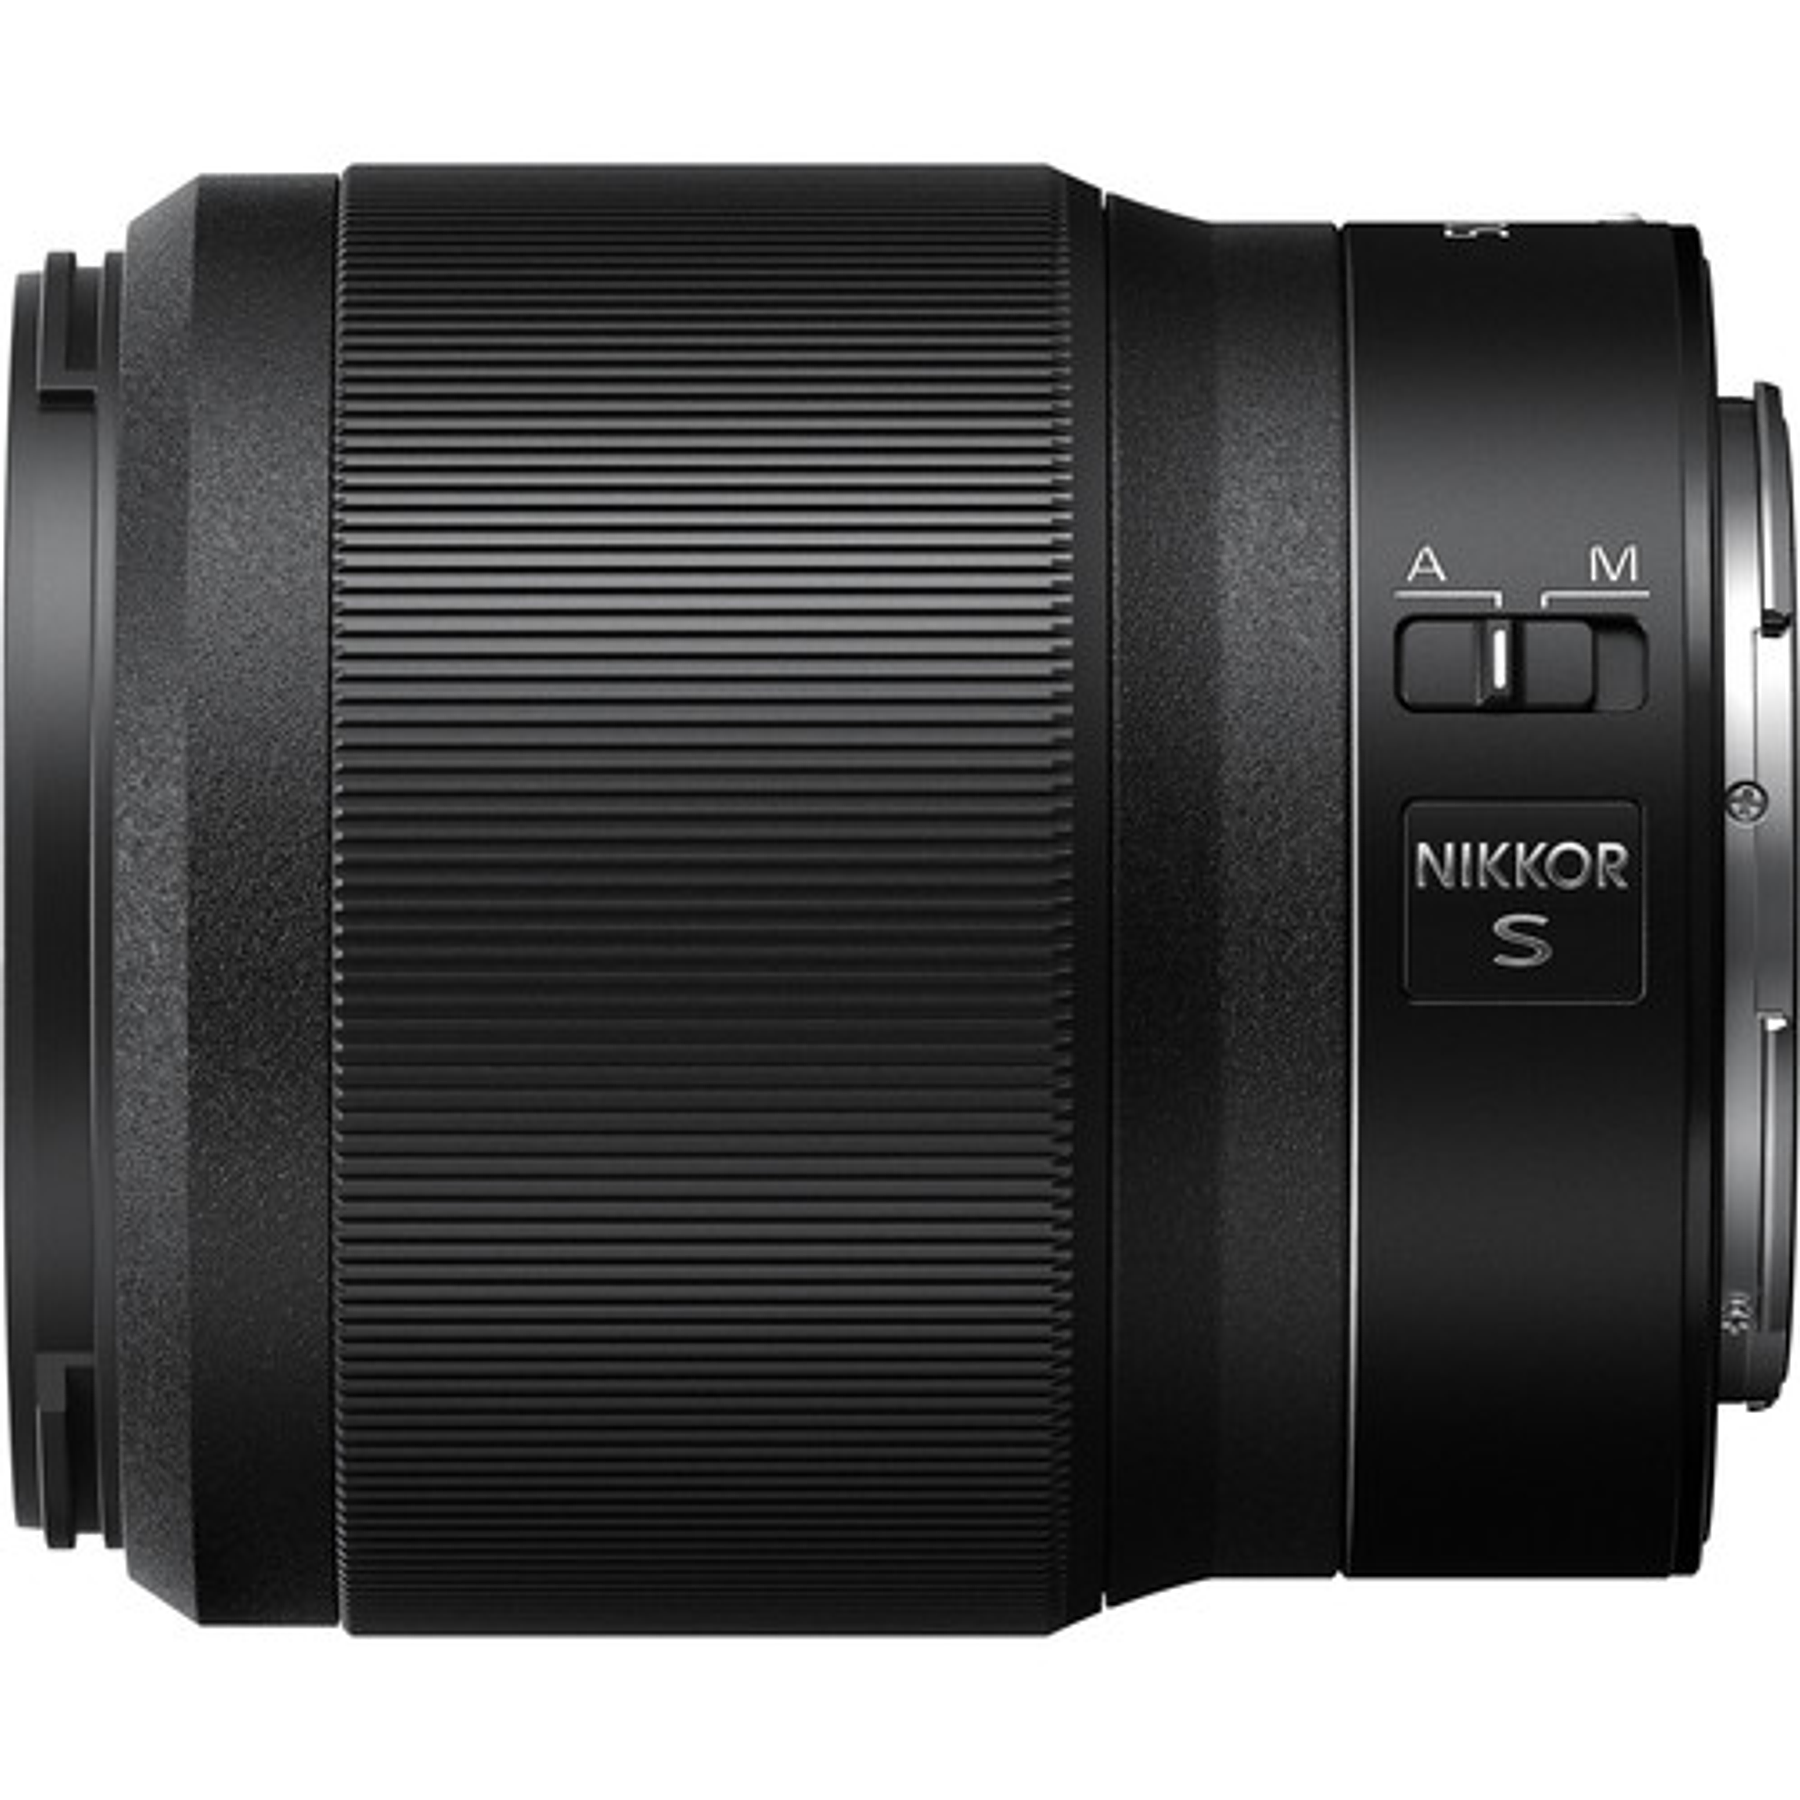 Nikon Z 50mm f1.8 S